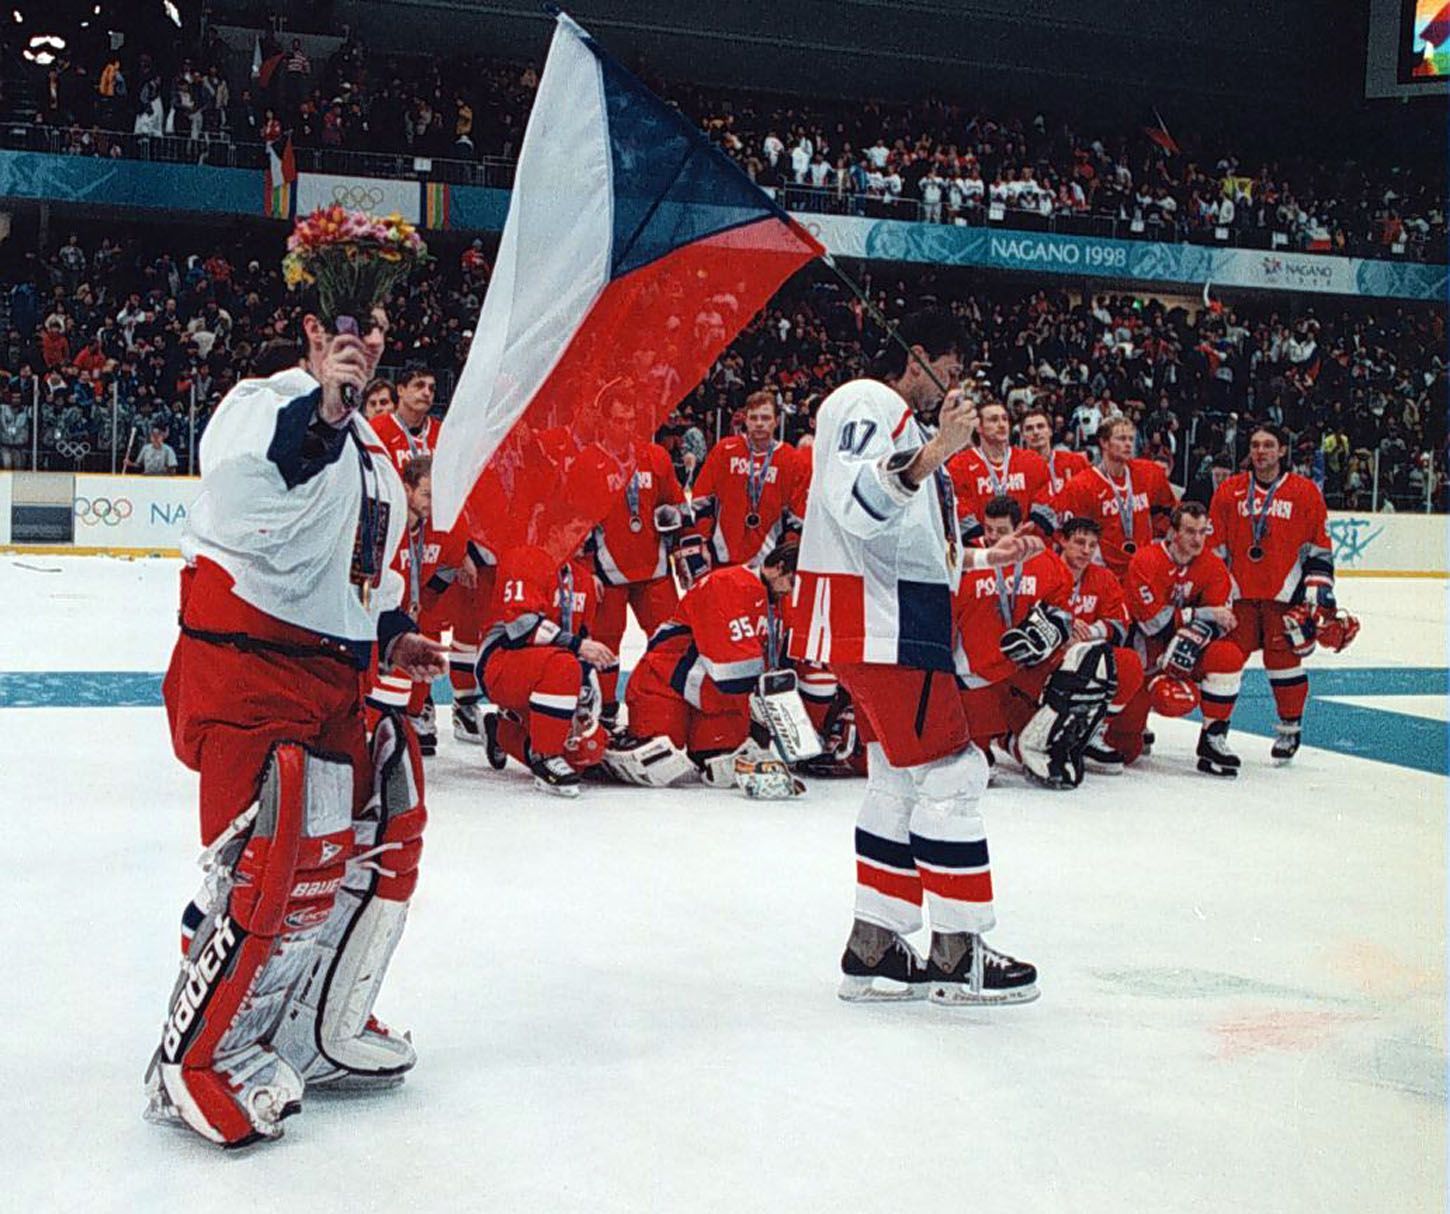 Archivní snímky z ZOH Nagano 1998 - hokej. Růžička, Hašek a ruský tým